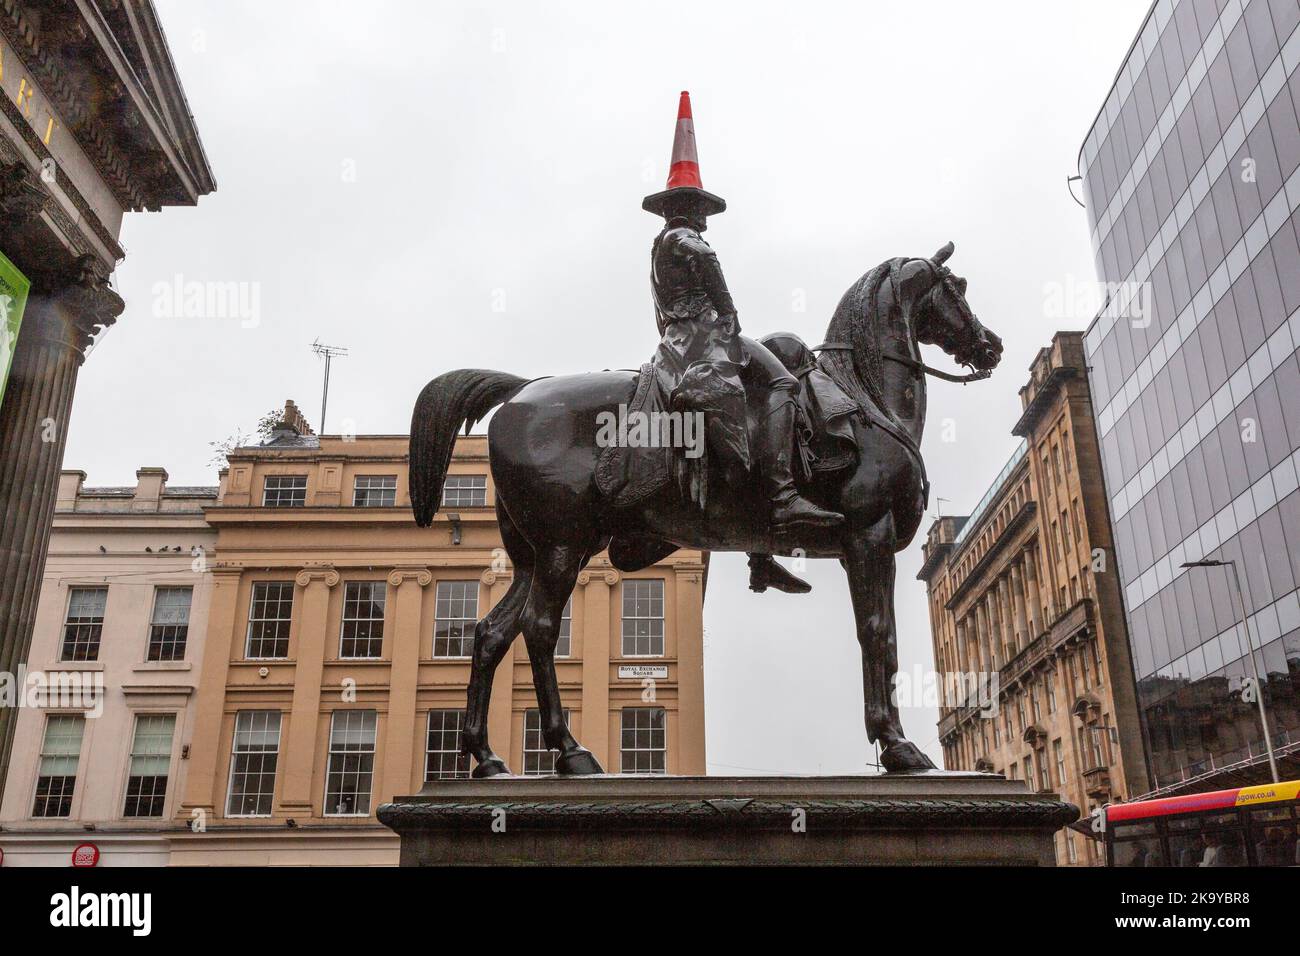 Statua equestre del Duca di Wellington, famosa per avere un cappello a cono stradale. Glasgow Museum of Modern Art Scotland, Glasgow, Regno Unito. Foto Stock